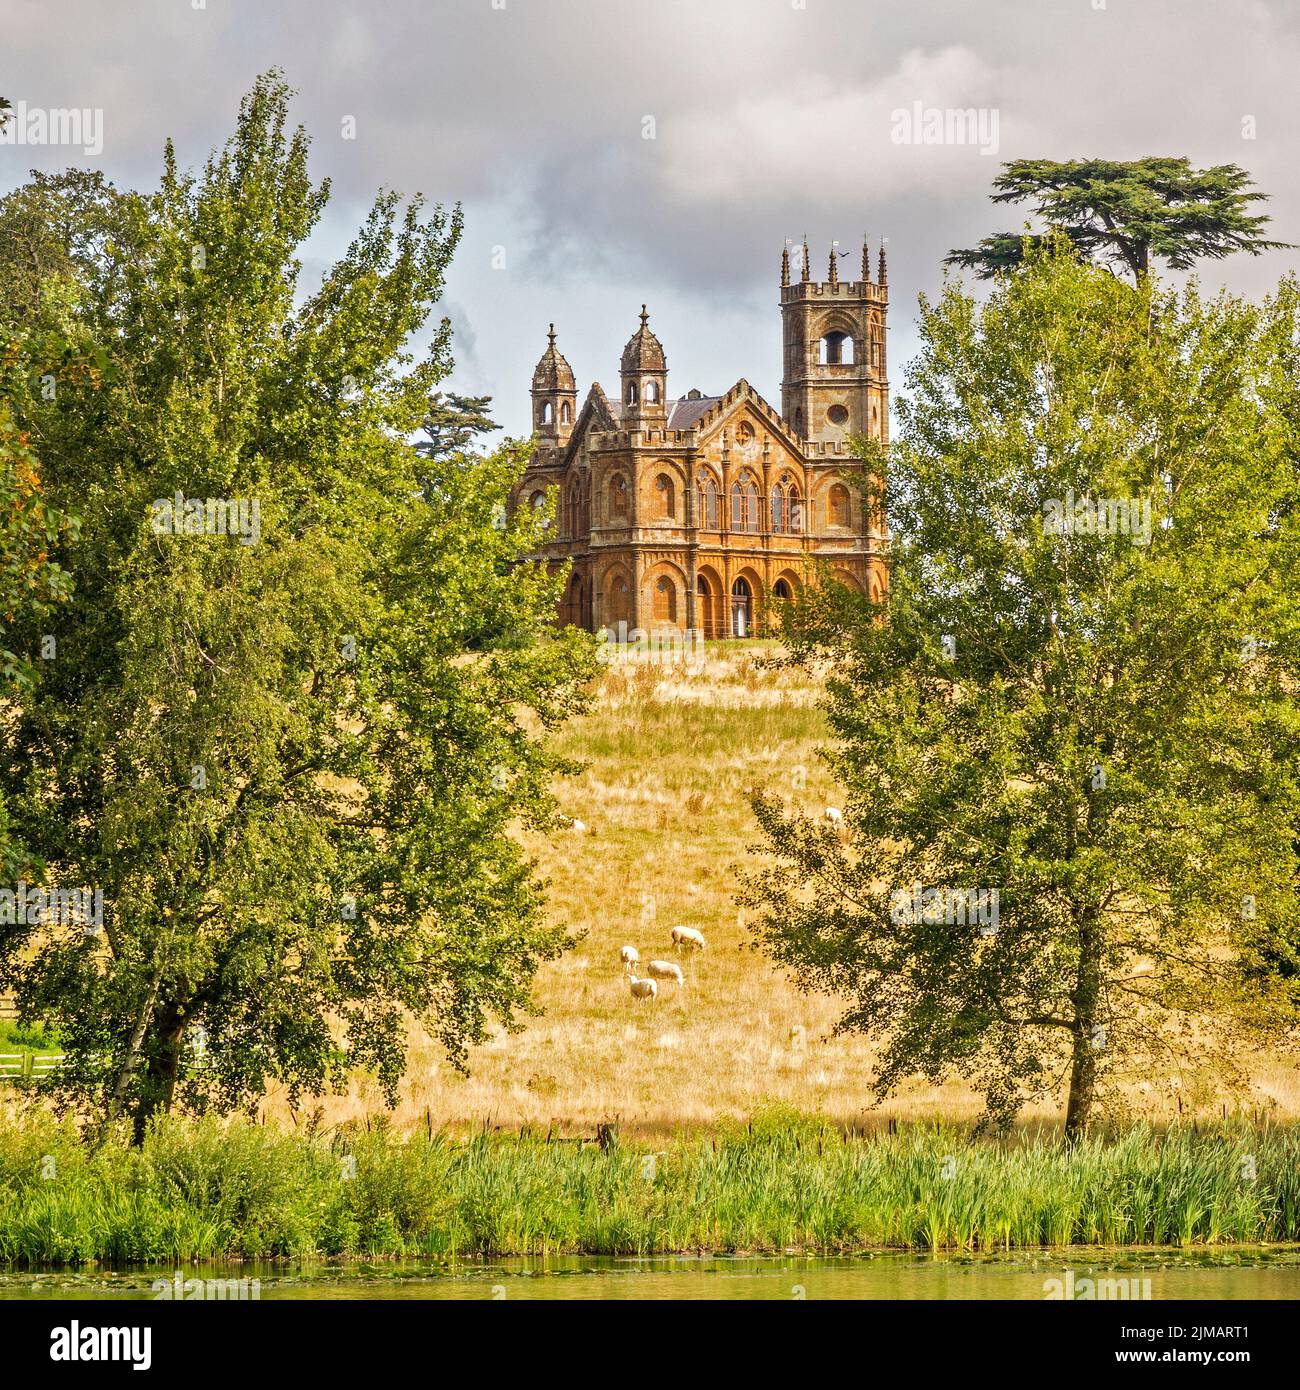 Der gotische Tempel auf dem Hügel Stowe Gardens Buckinghamshire Großbritannien Stockfoto